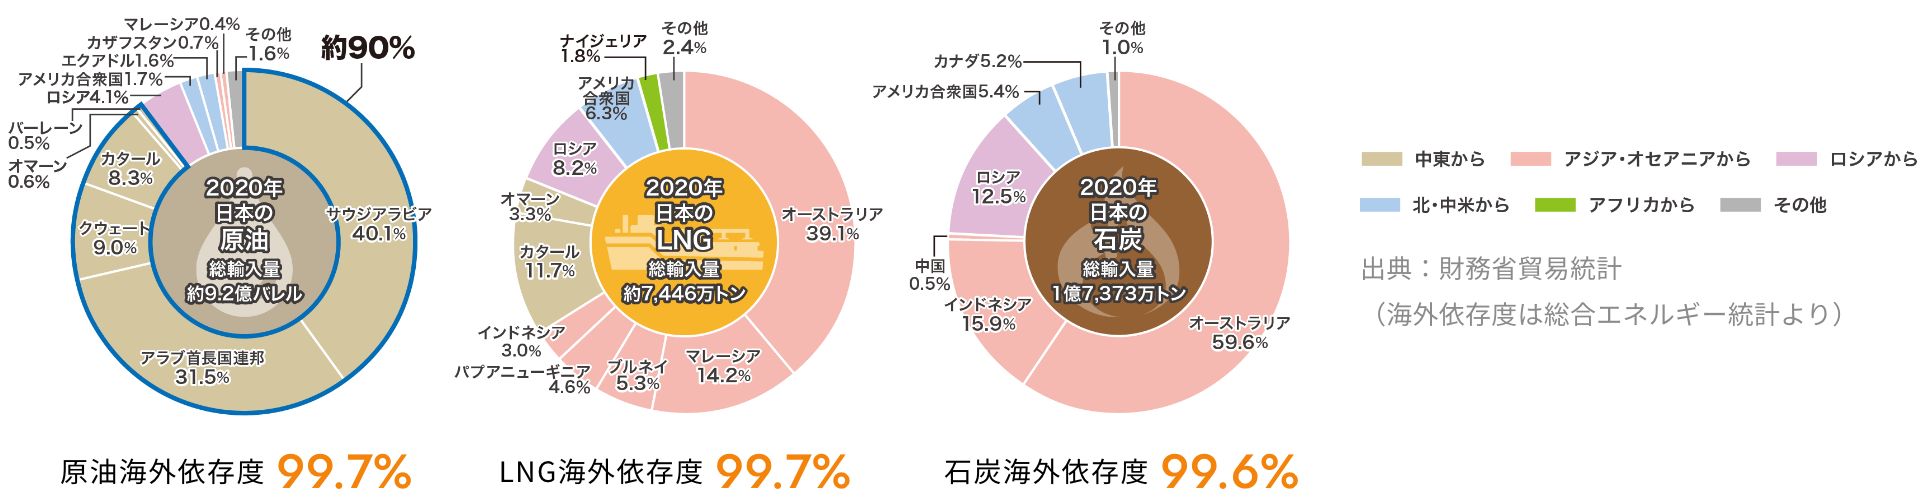 化石燃料に依存している日本の現状。